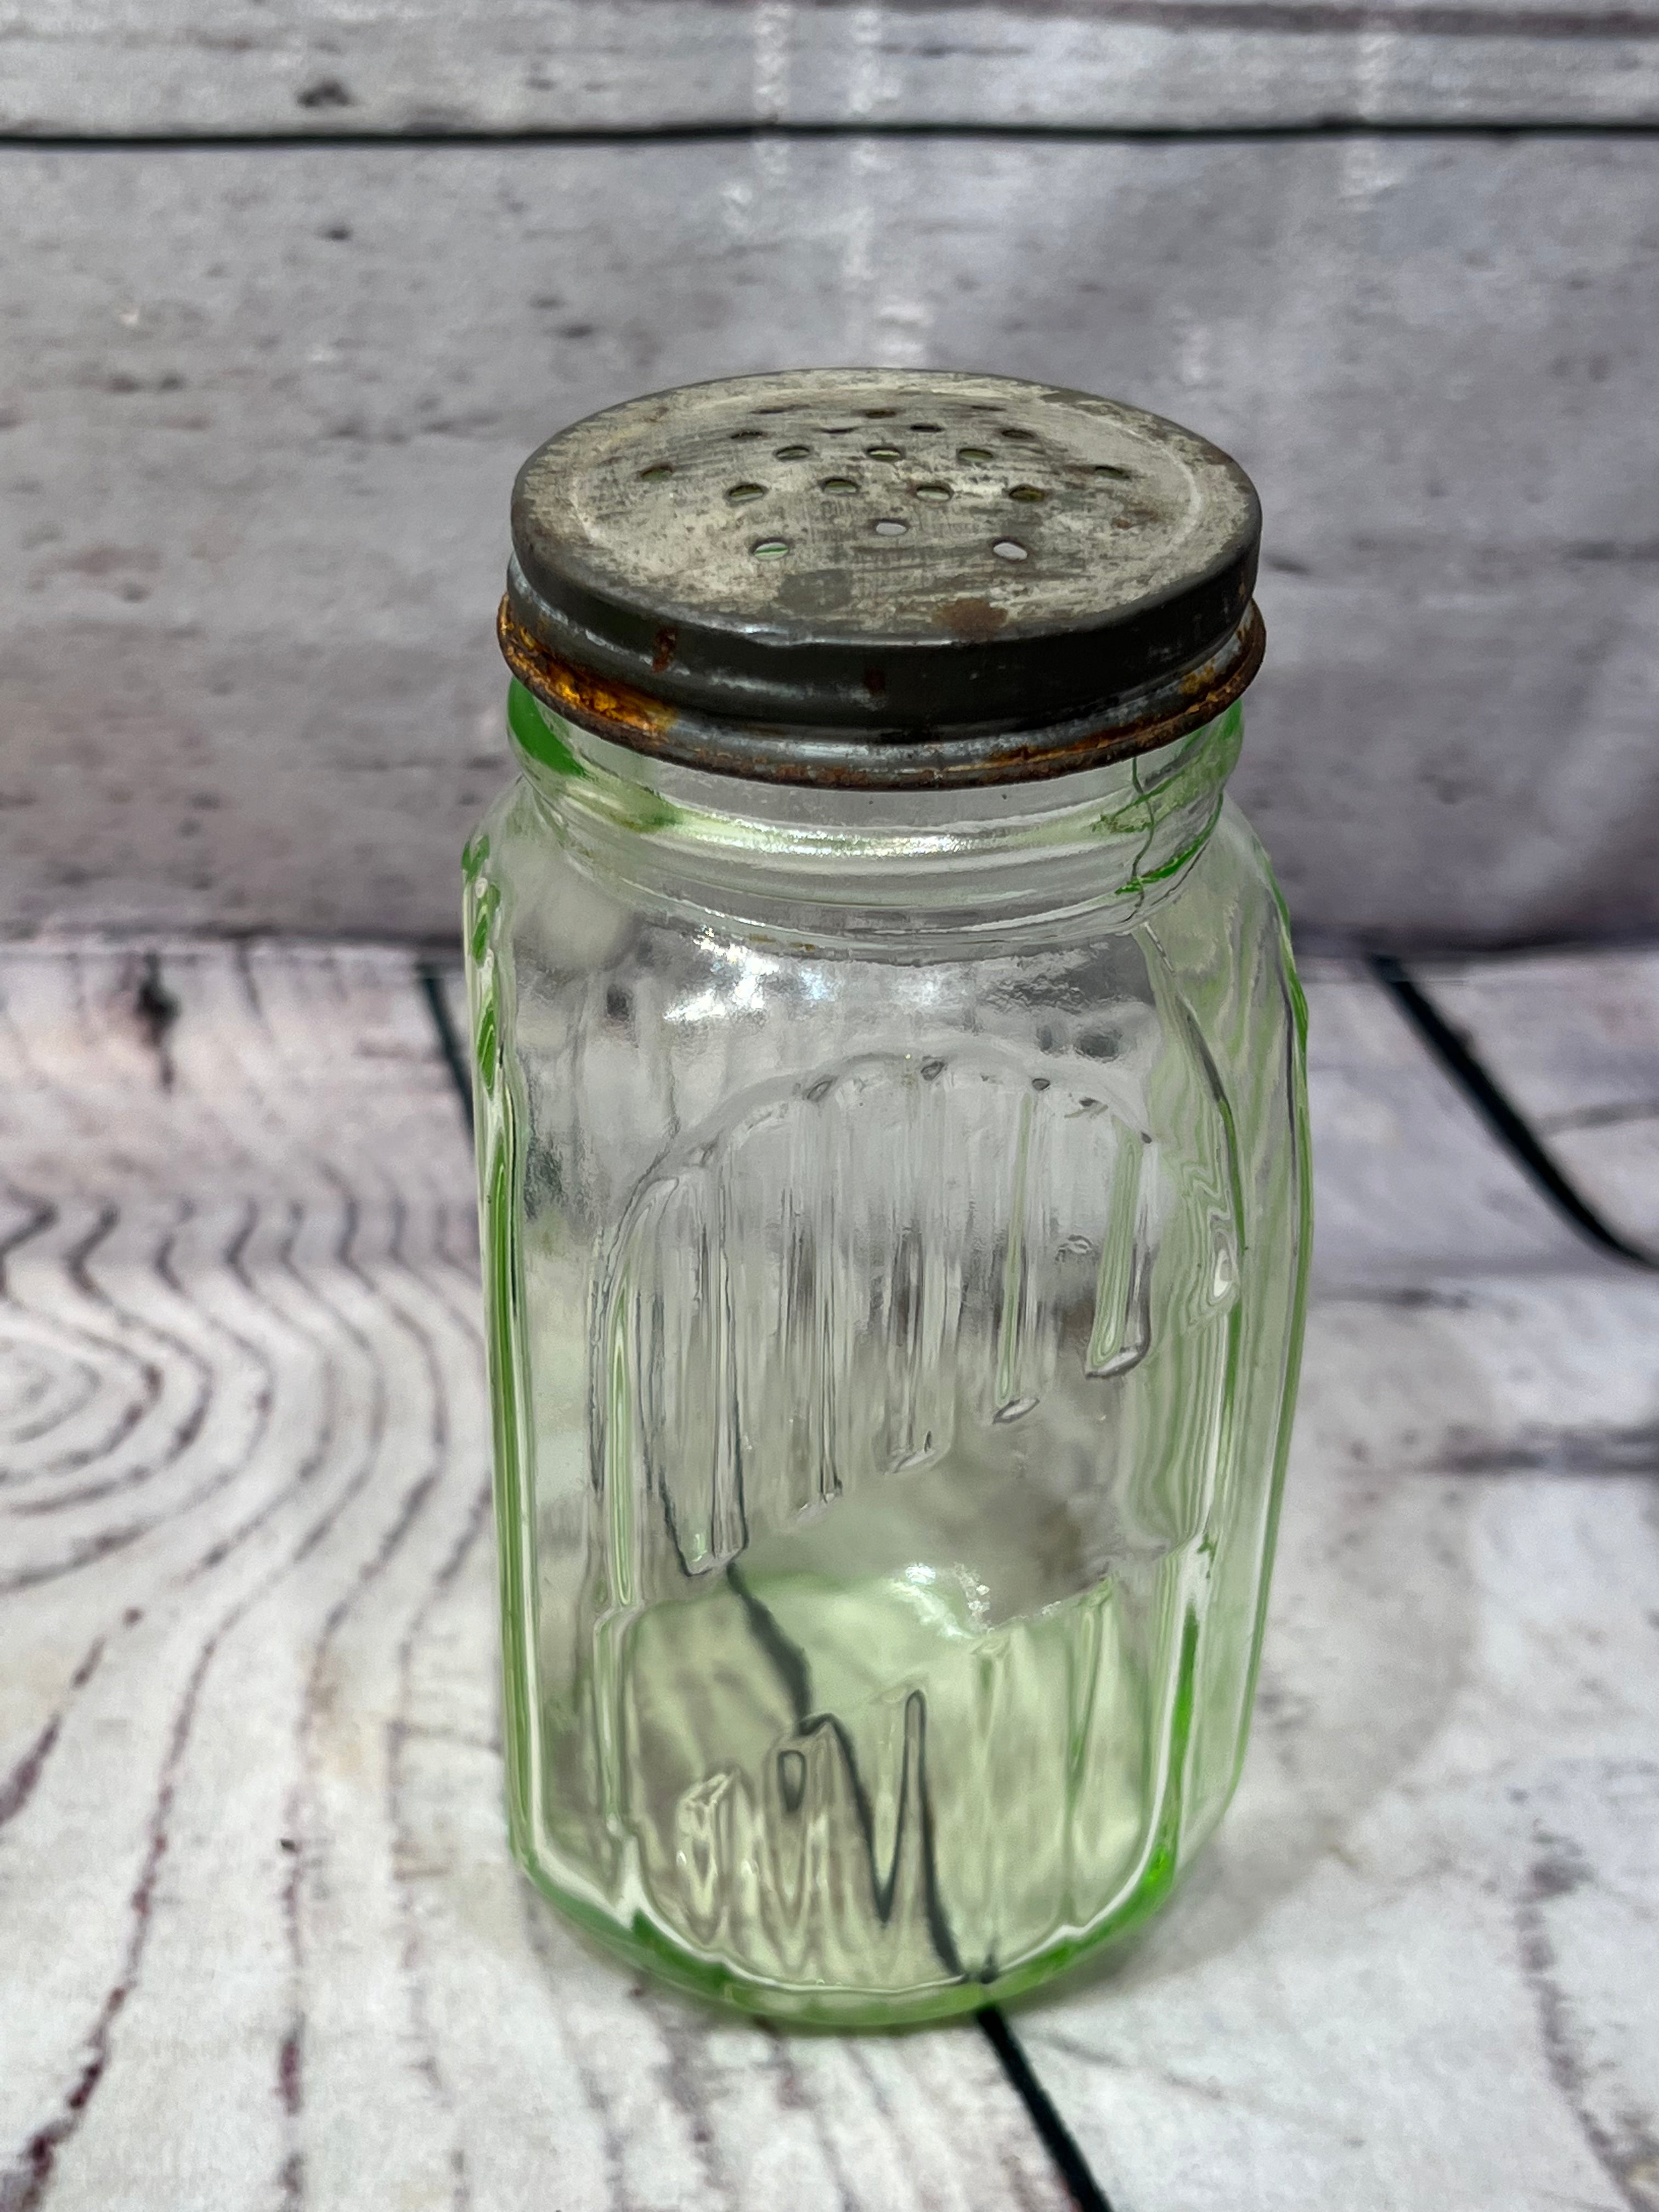 Vaseline glass salt shaker no lid